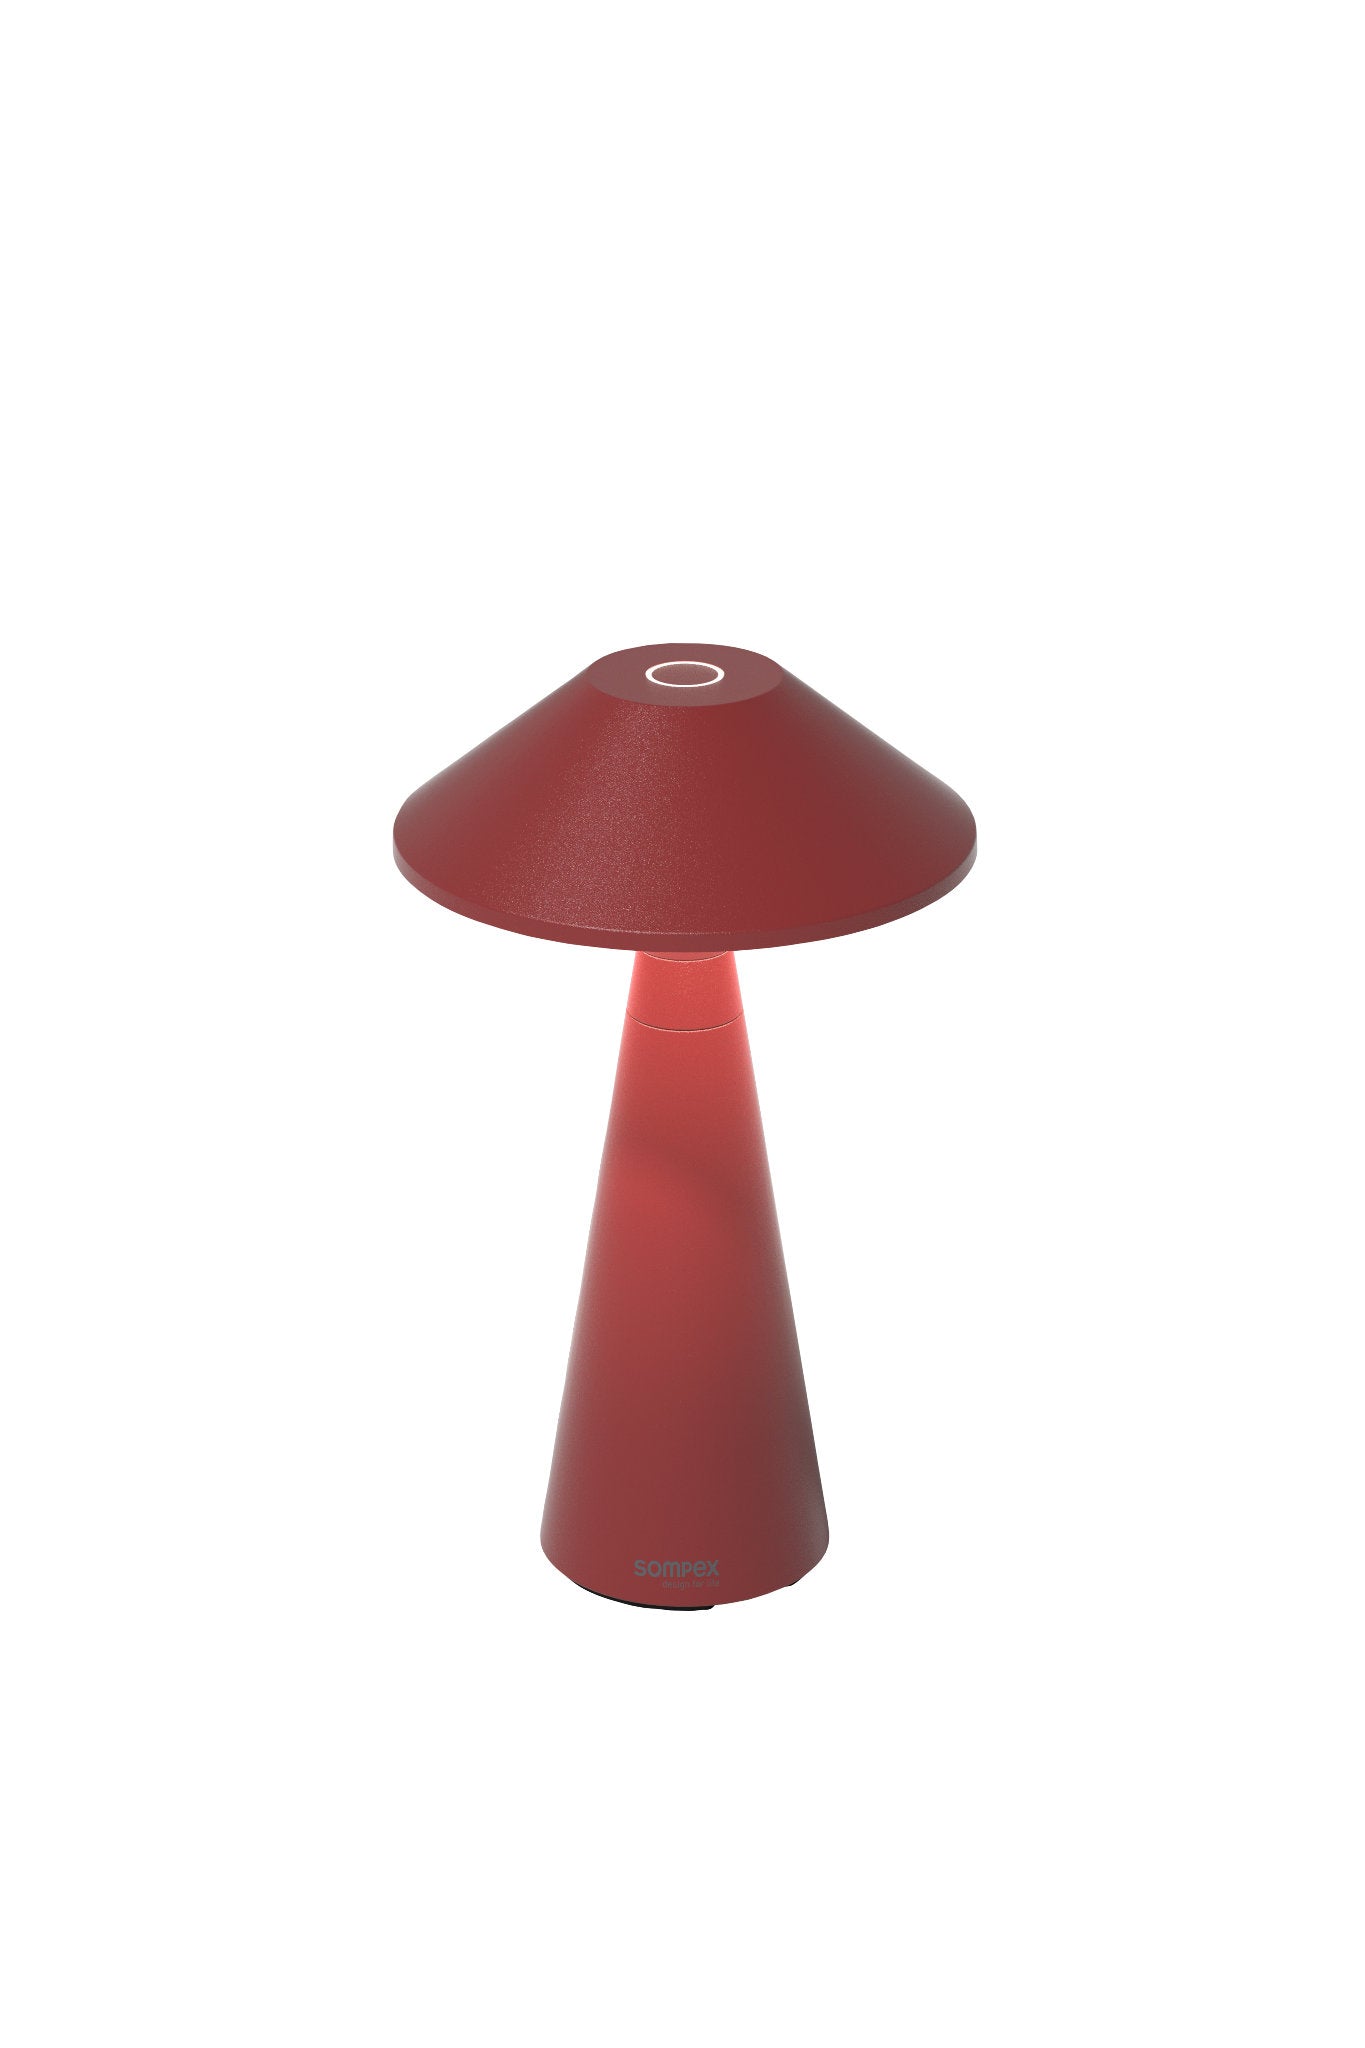 Move Outdoor Akkuleuchte von Sompex mit höhenverstellbarem Schirm, Farbe Rot